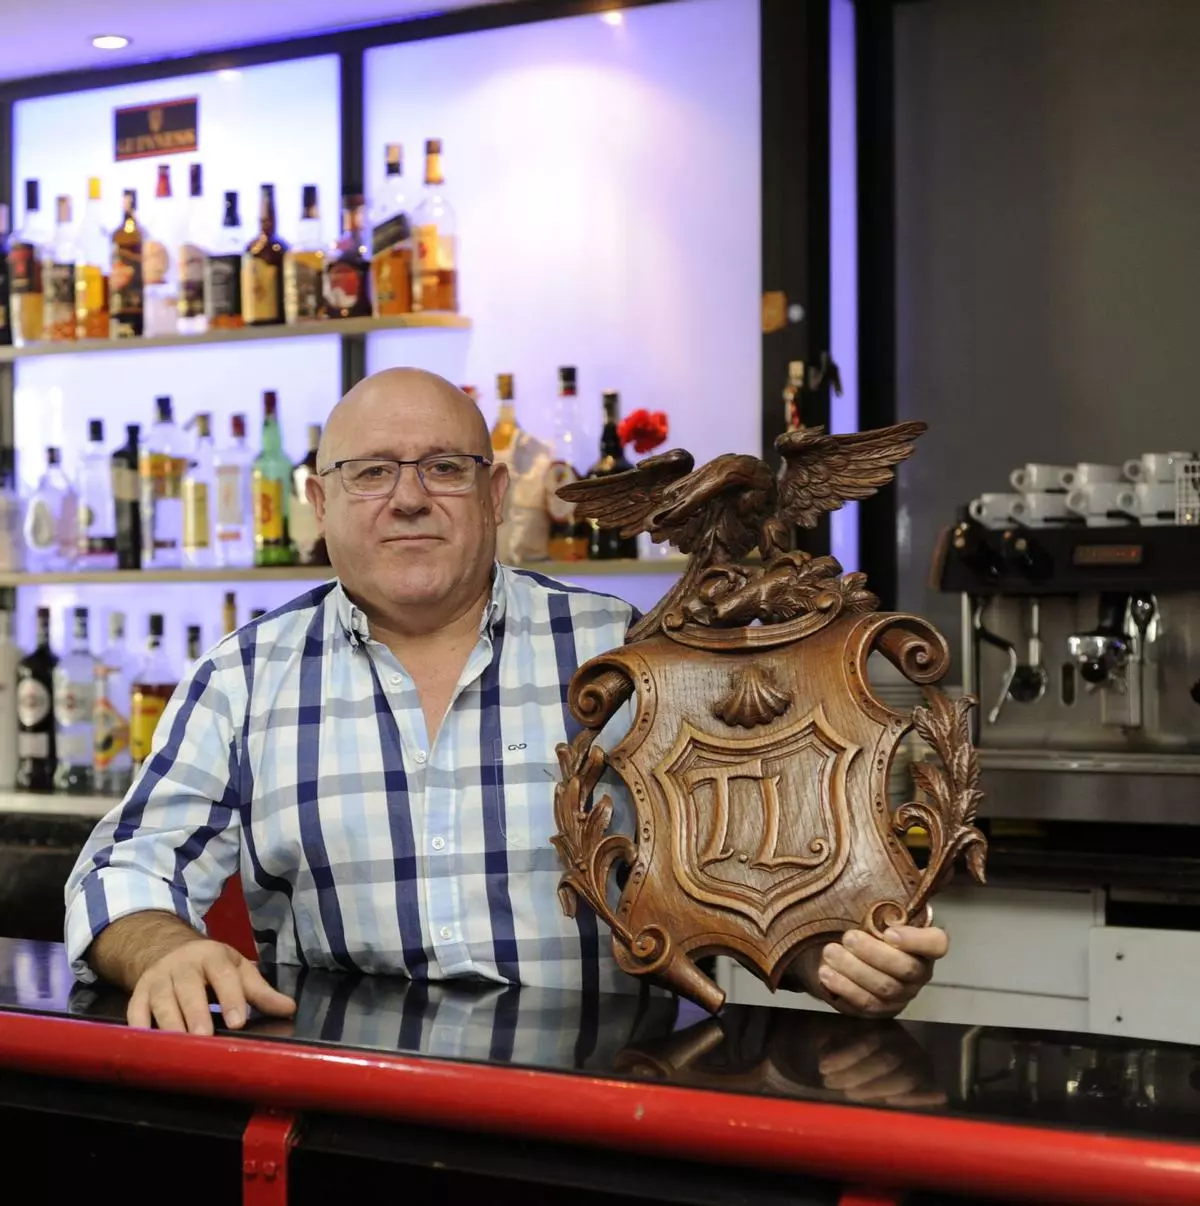 El dueño del mítico bar estradense TL2 se jubila: “Mi sueño es que siga abierto muchos años más”